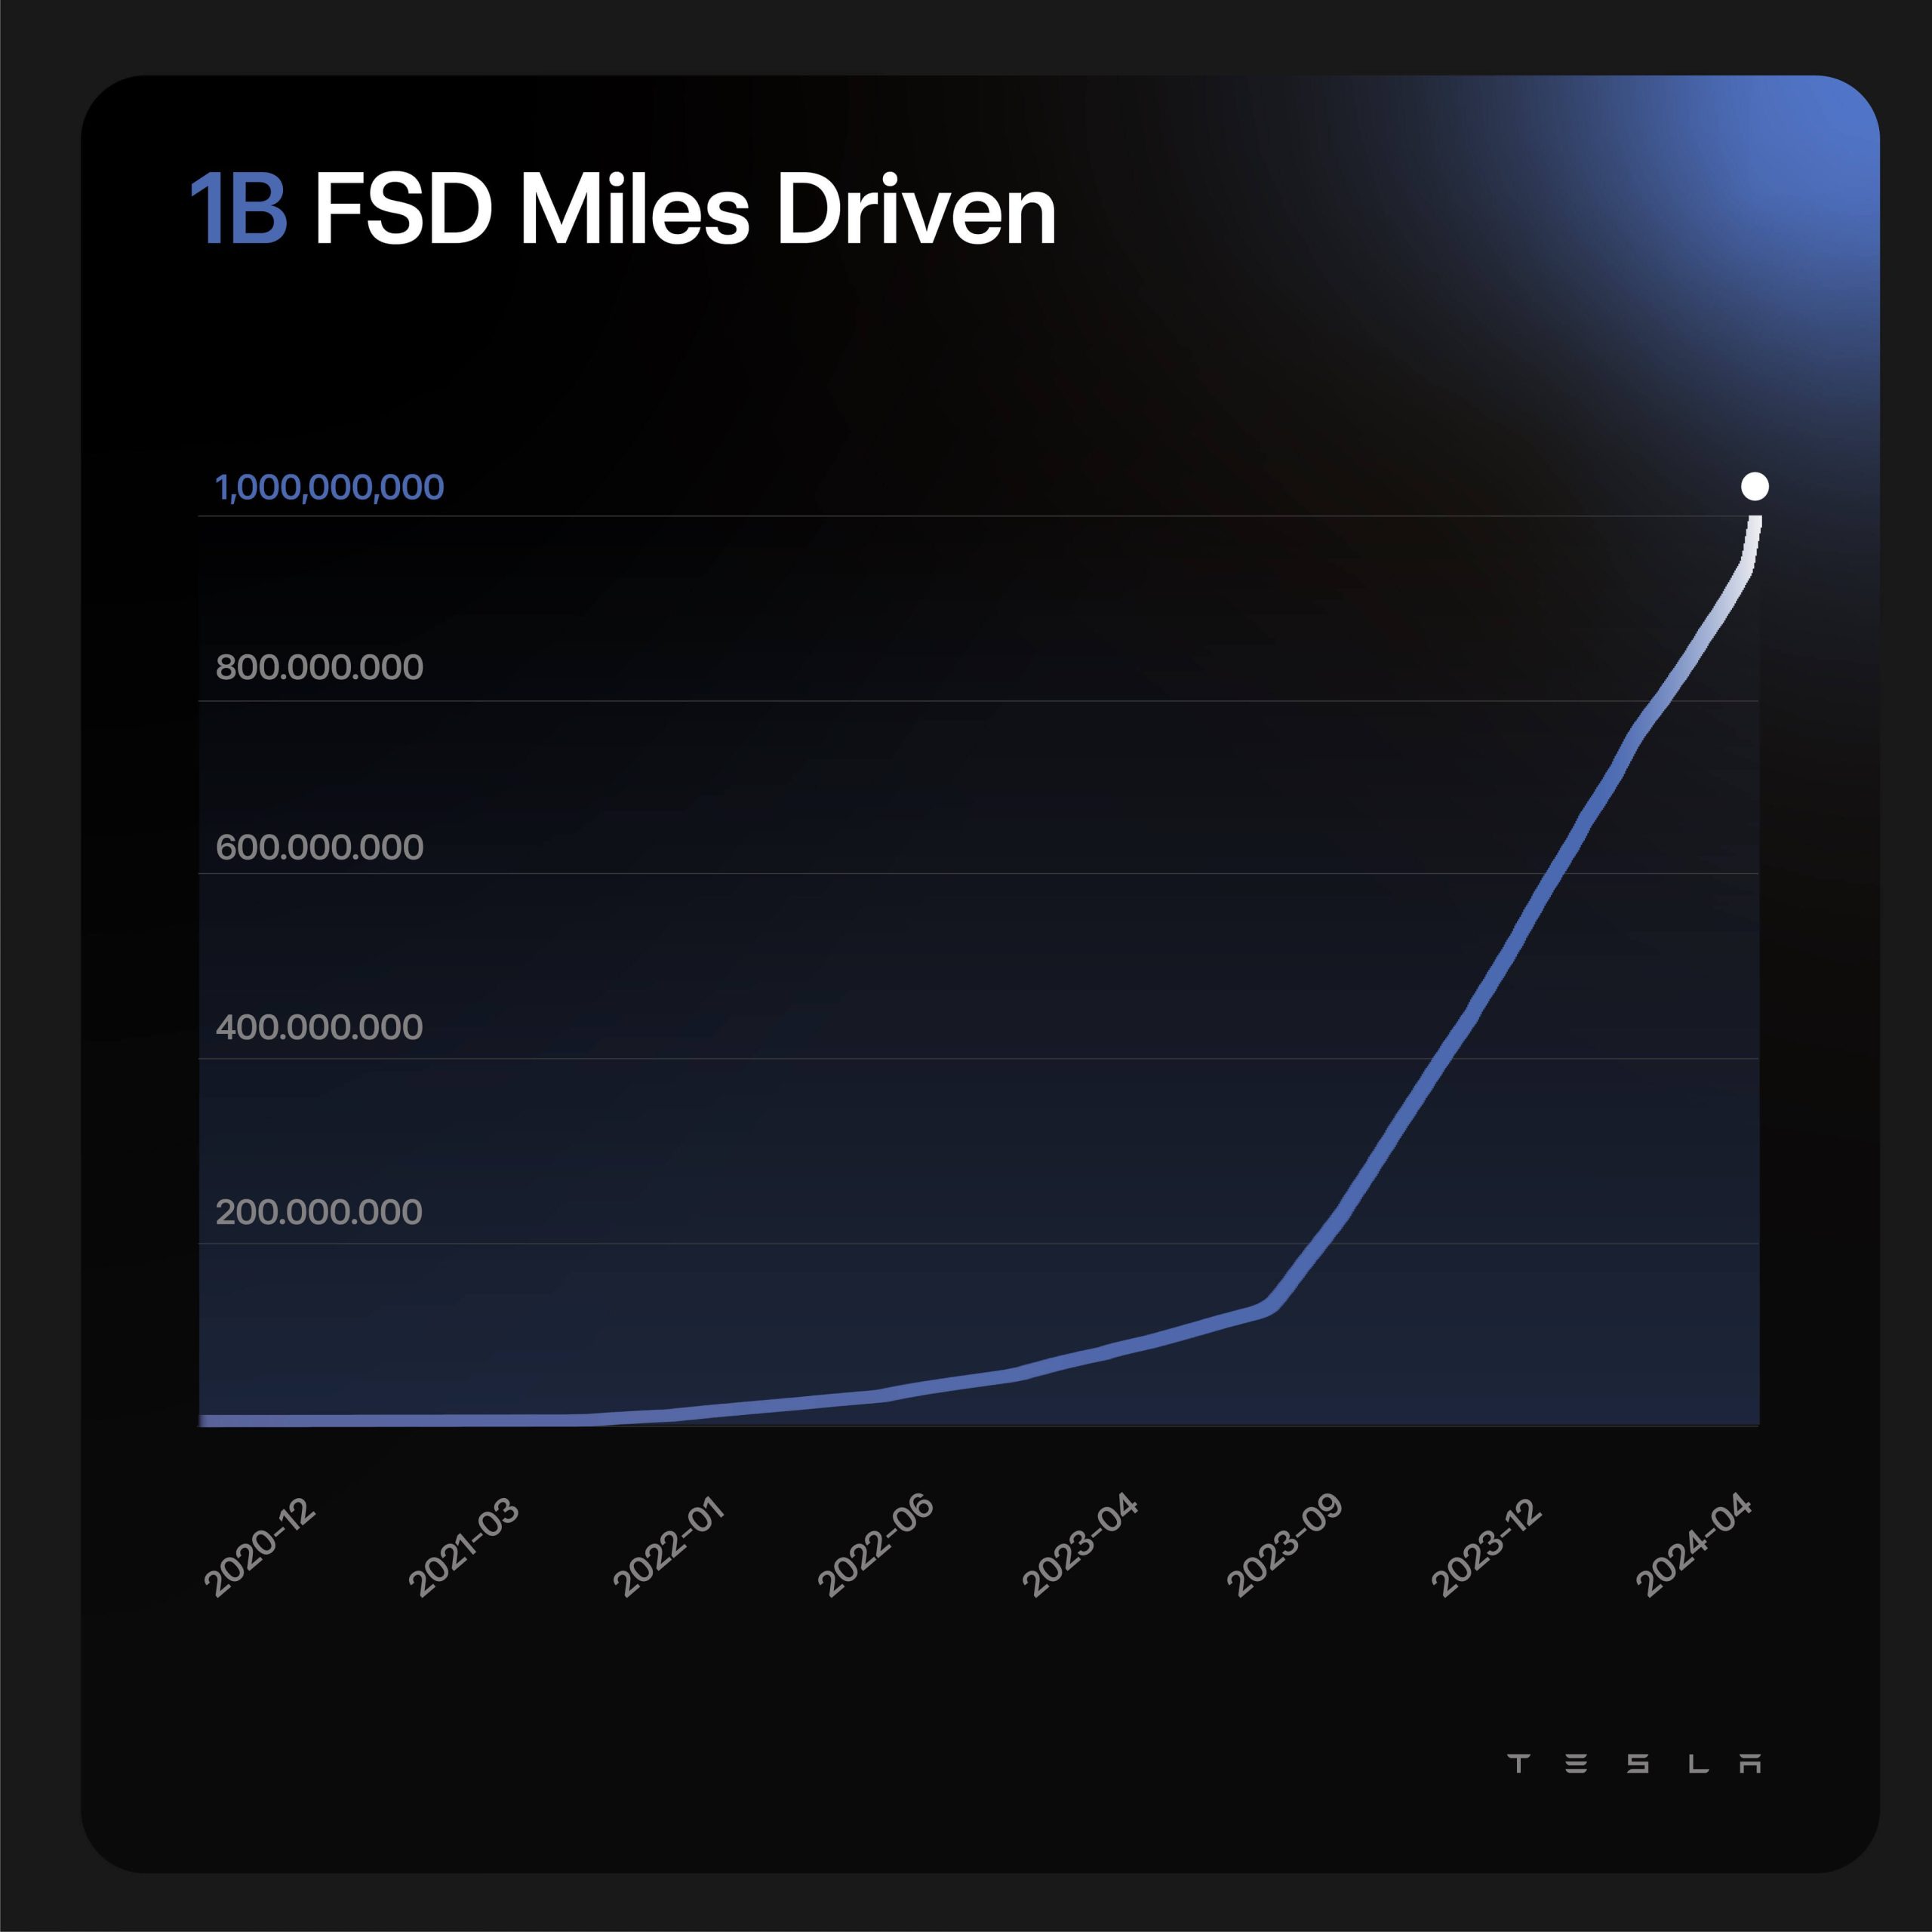 特斯拉 FSD 行驶总里程突破 10 亿英里！